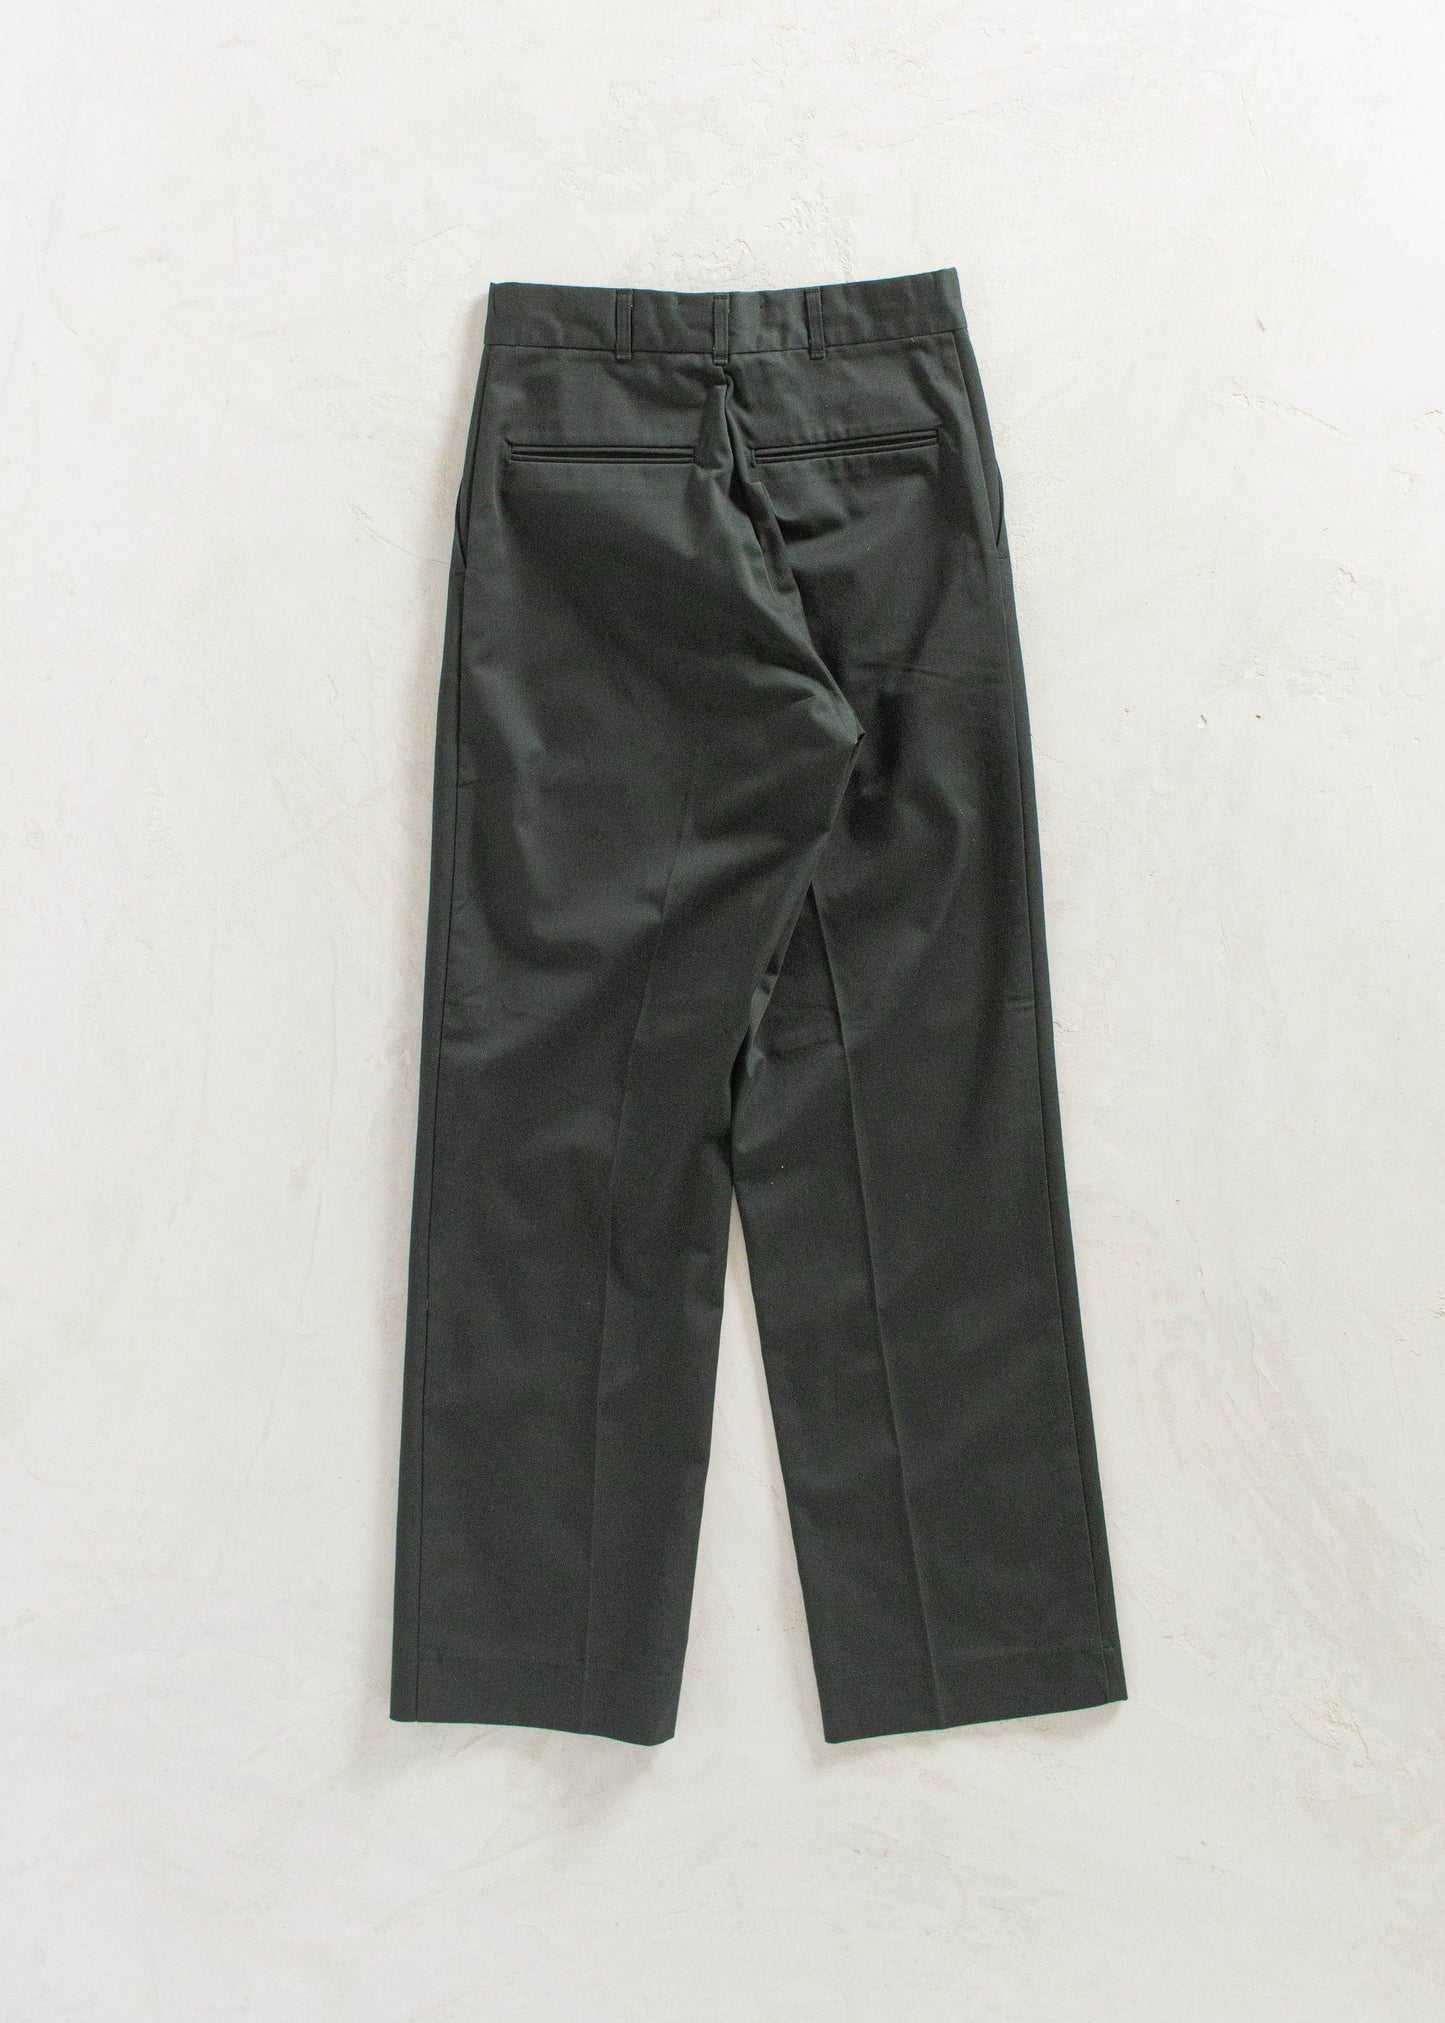 Vintage 1990s Military Cadet Pants Size Women's 25 Men's 28